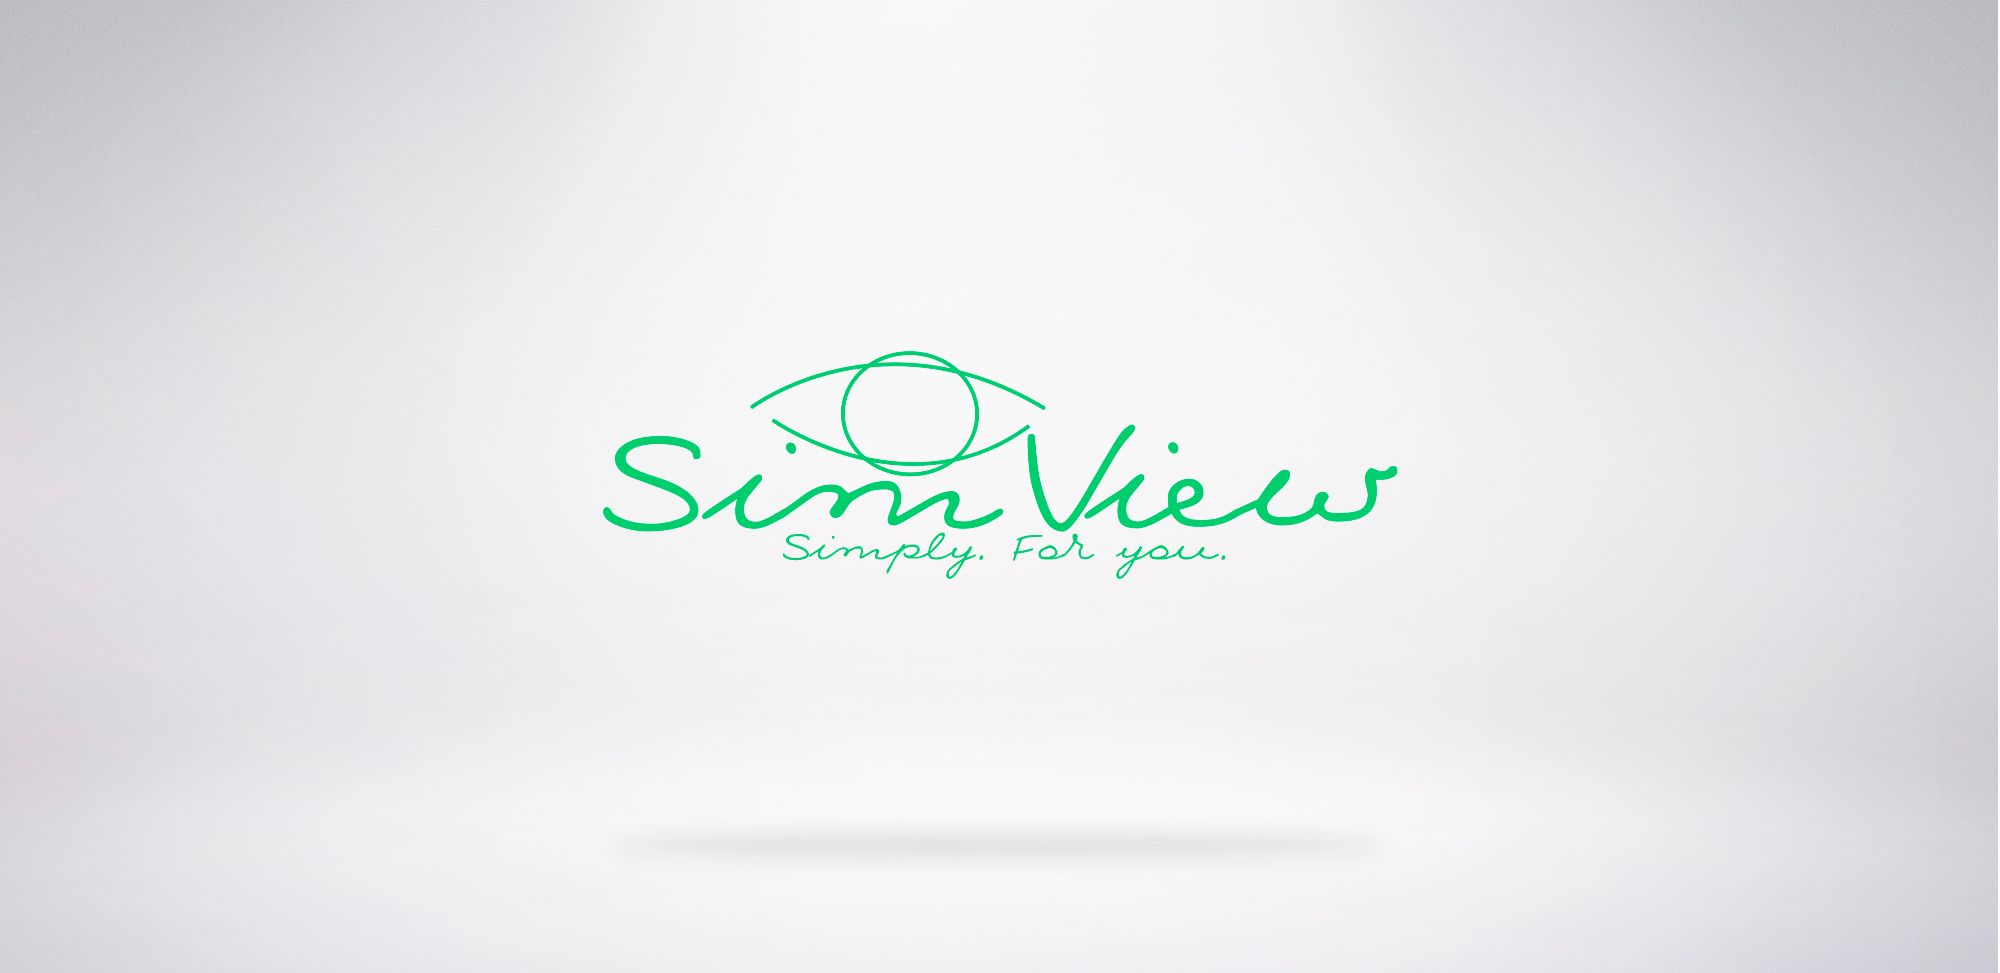 SimView лого и фирменный стиль - дизайнер dimkoops